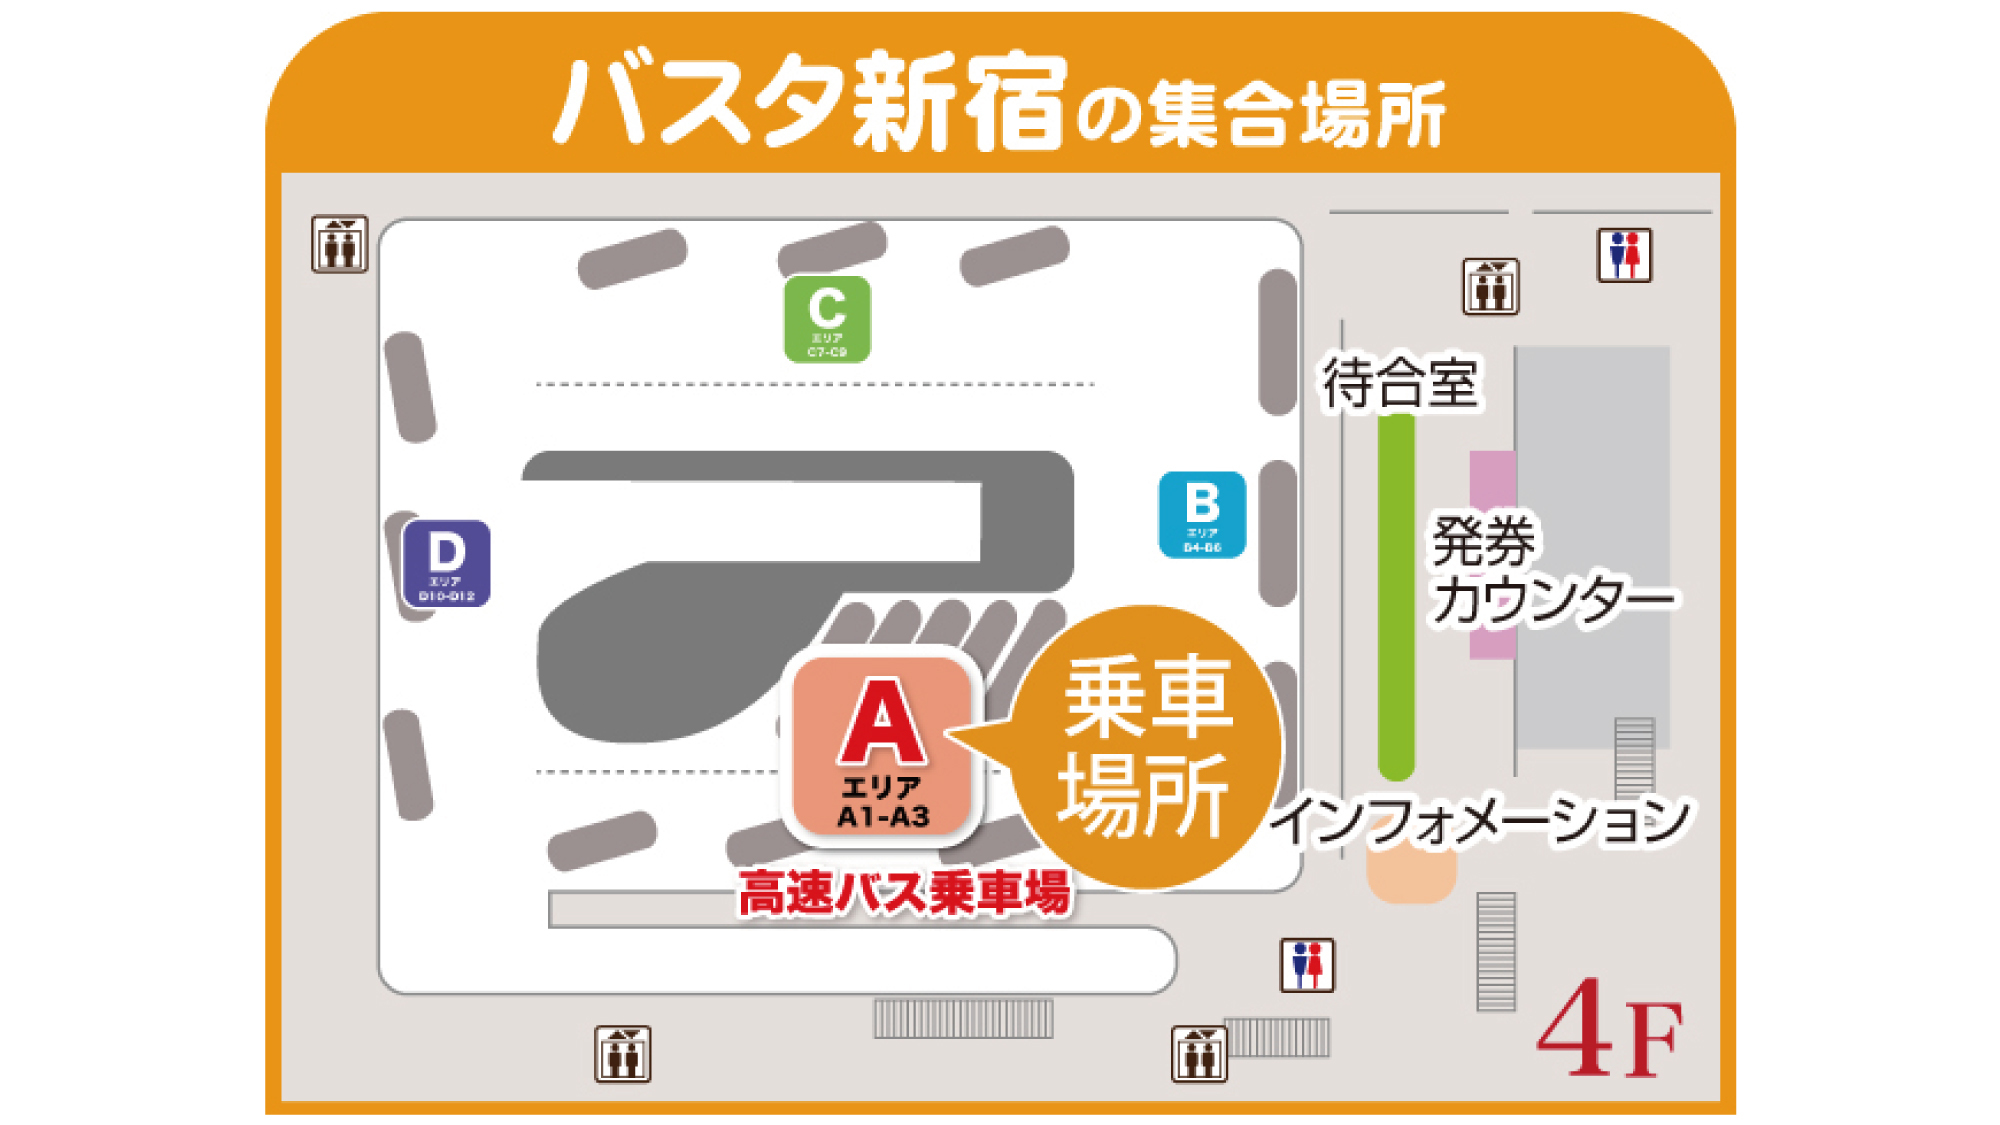 バスパック：集合場所地図【バスタ新宿】※現在運休しております